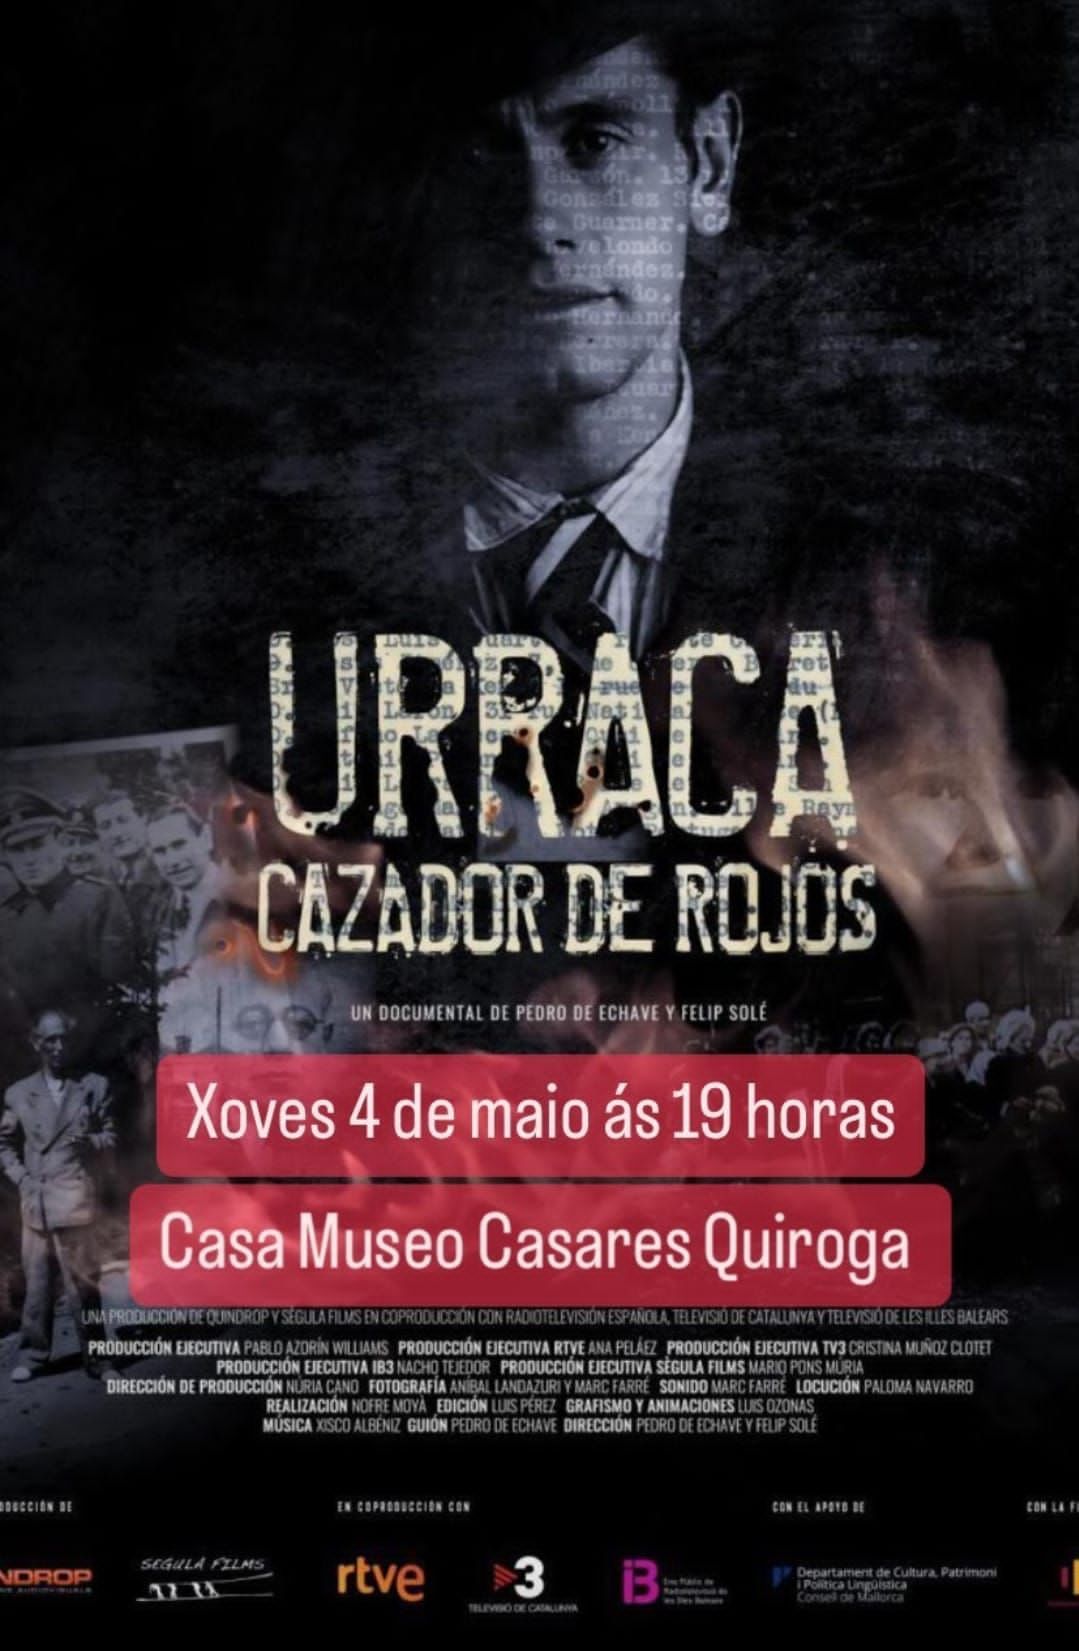 Urraca, affiche de la projection à Coruna